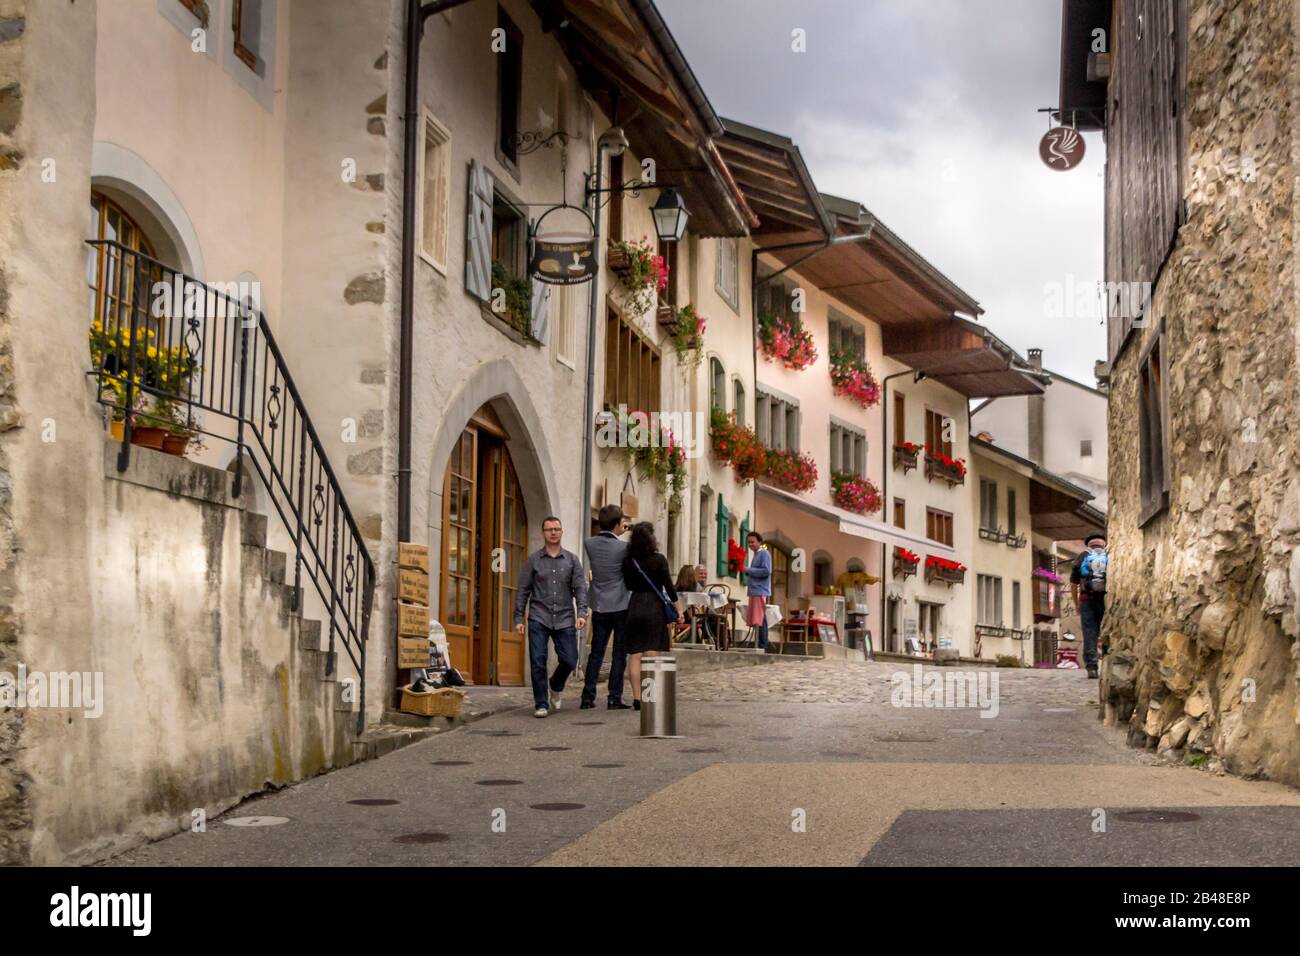 Le Gruyere / Fribourg, Svizzera - 02 ottobre 2014: Splendida vista sulla città medievale di Gruyeres, sede del famoso formaggio le Gruyere, Can Foto Stock